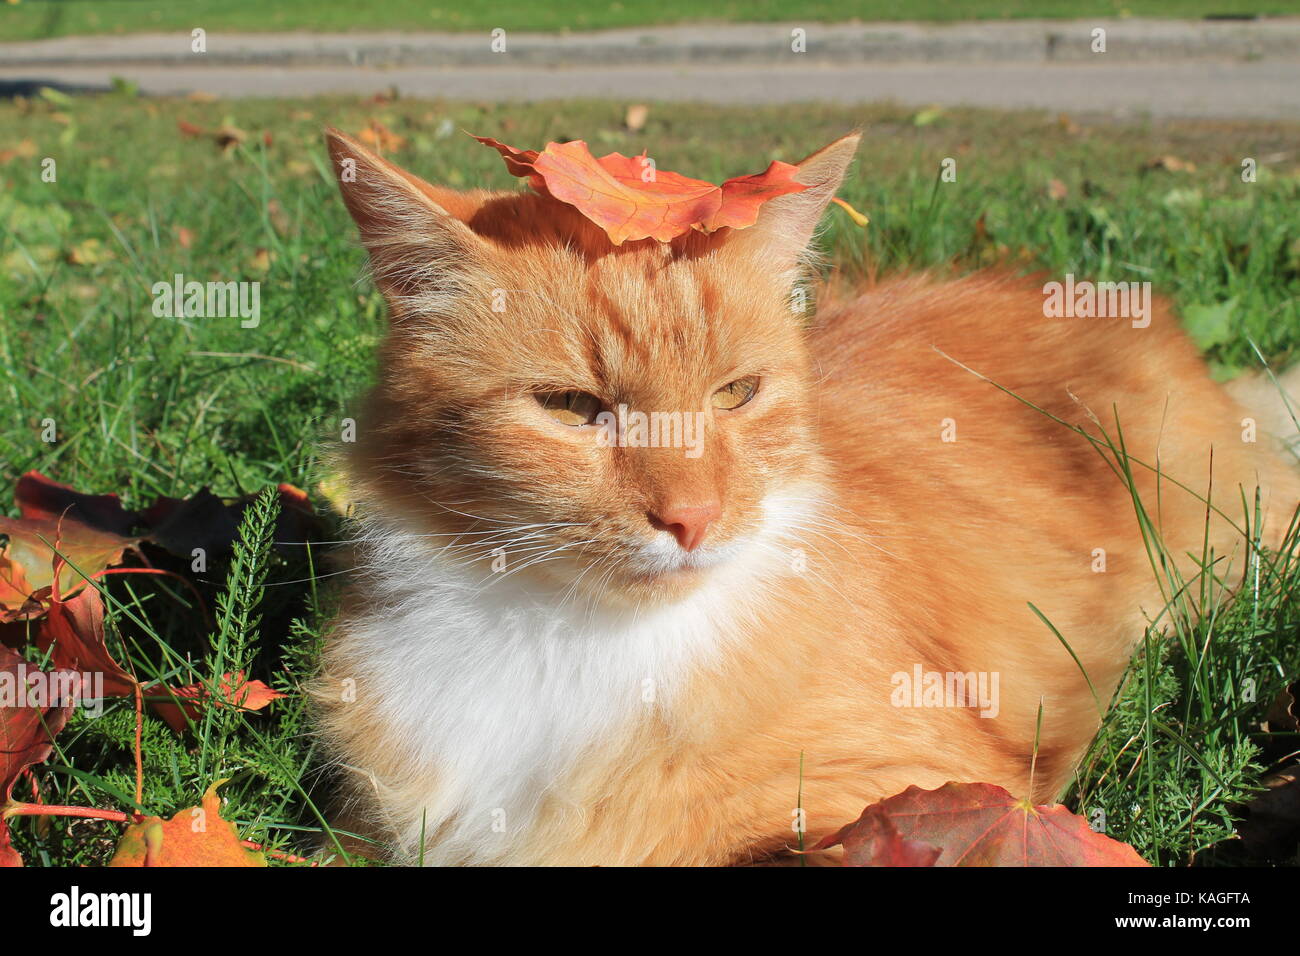 Bella di colore arancione brillante fluffy cat giocare su erba verde in acero rosso fogliame nella calda giornata di sole Foto Stock